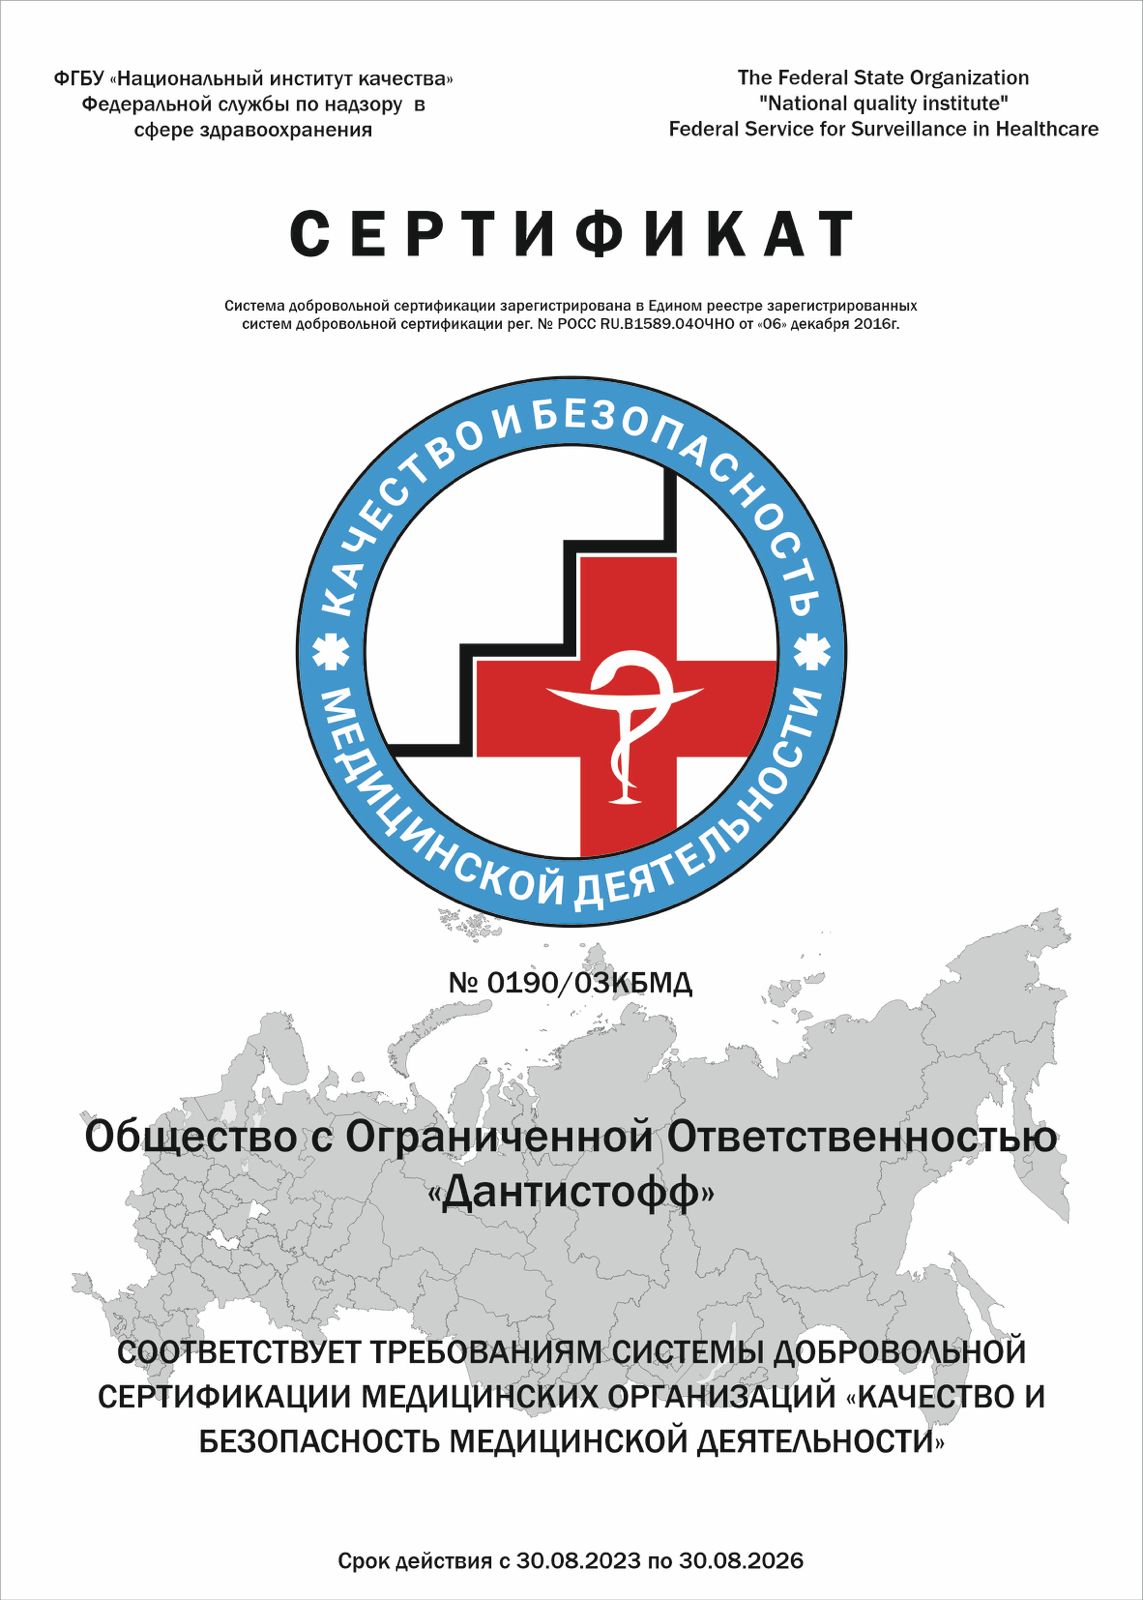 Получили сертификат «Качество и безопасность медицинской деятельности»